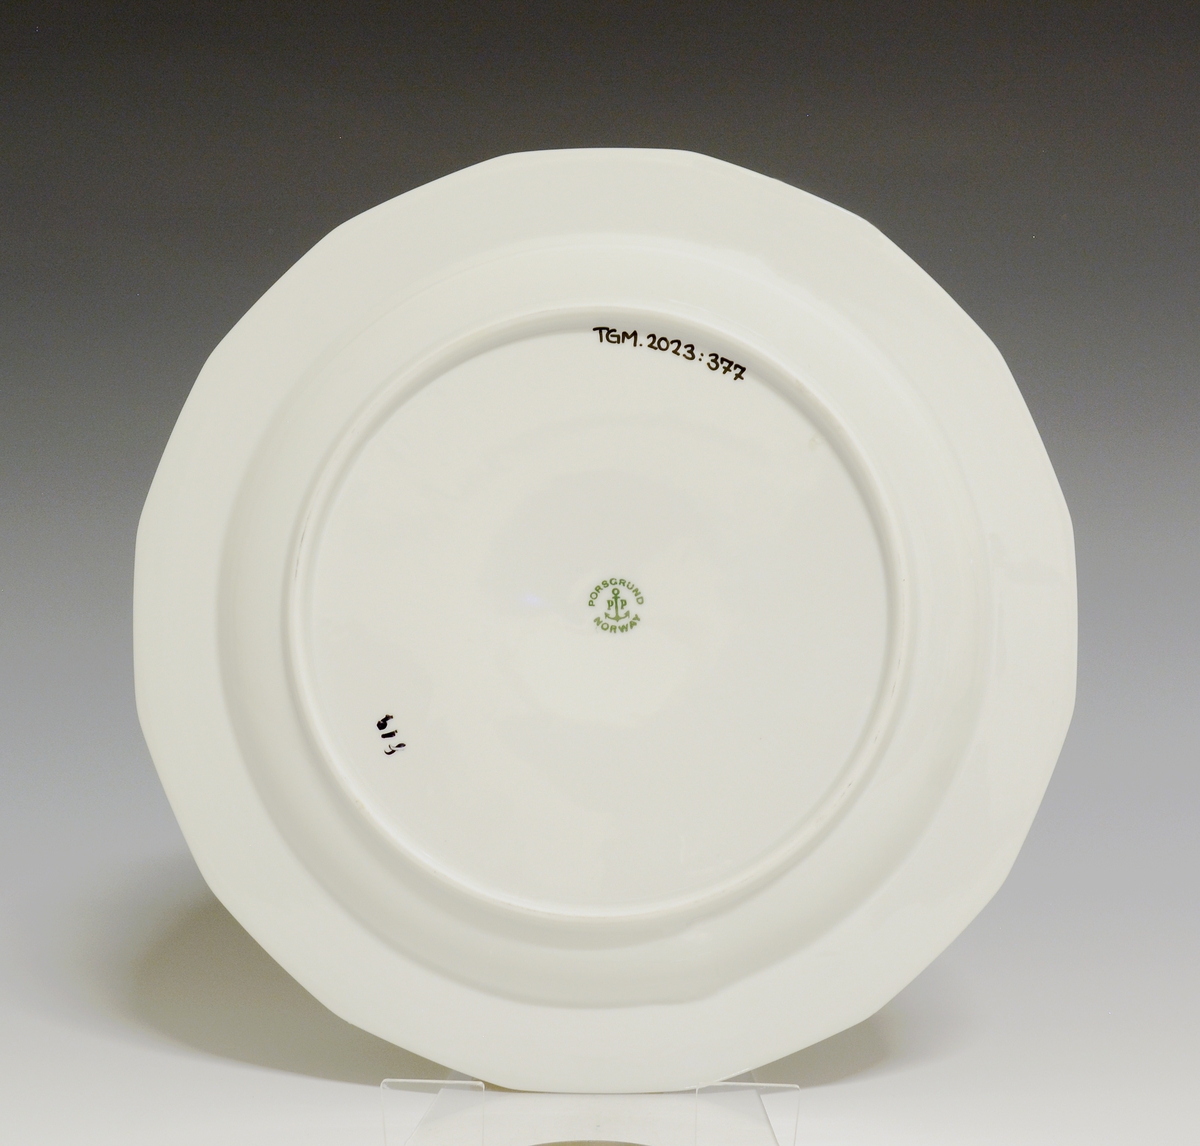 Mangekantet tallerken av porselen med hvit glasur. 
Modell: Octavia, tegnet av Grete Rønning i 1977.
